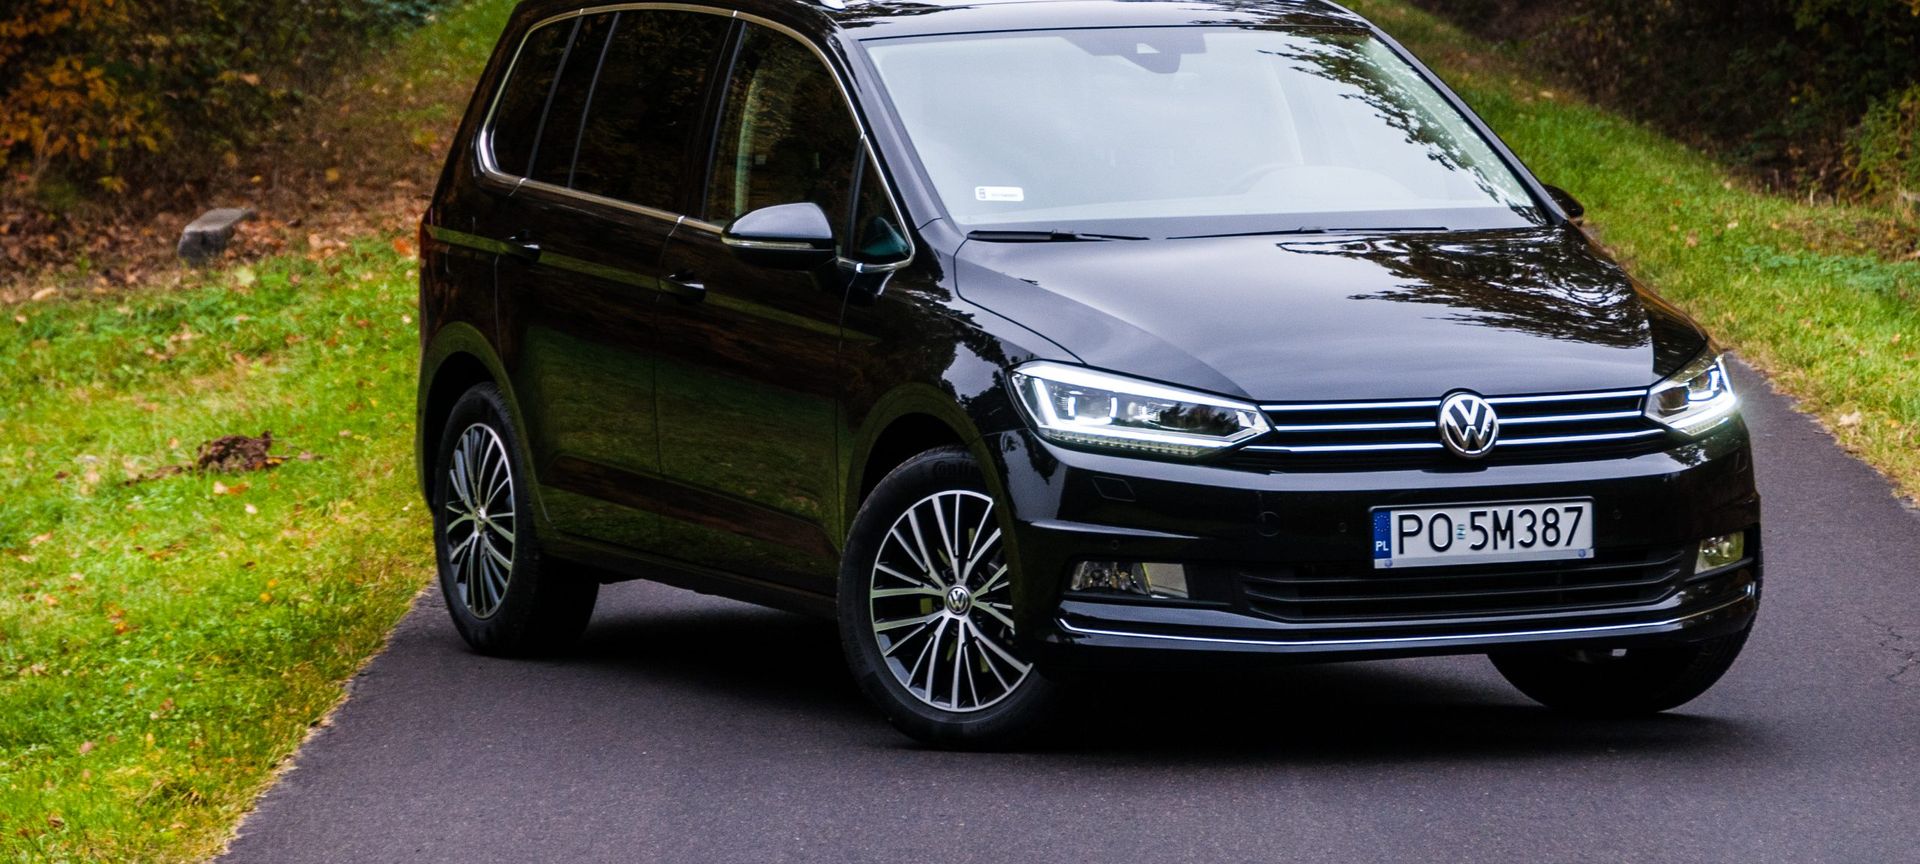 Pierwsza jazda Volkswagen Touran rodzina w komplecie